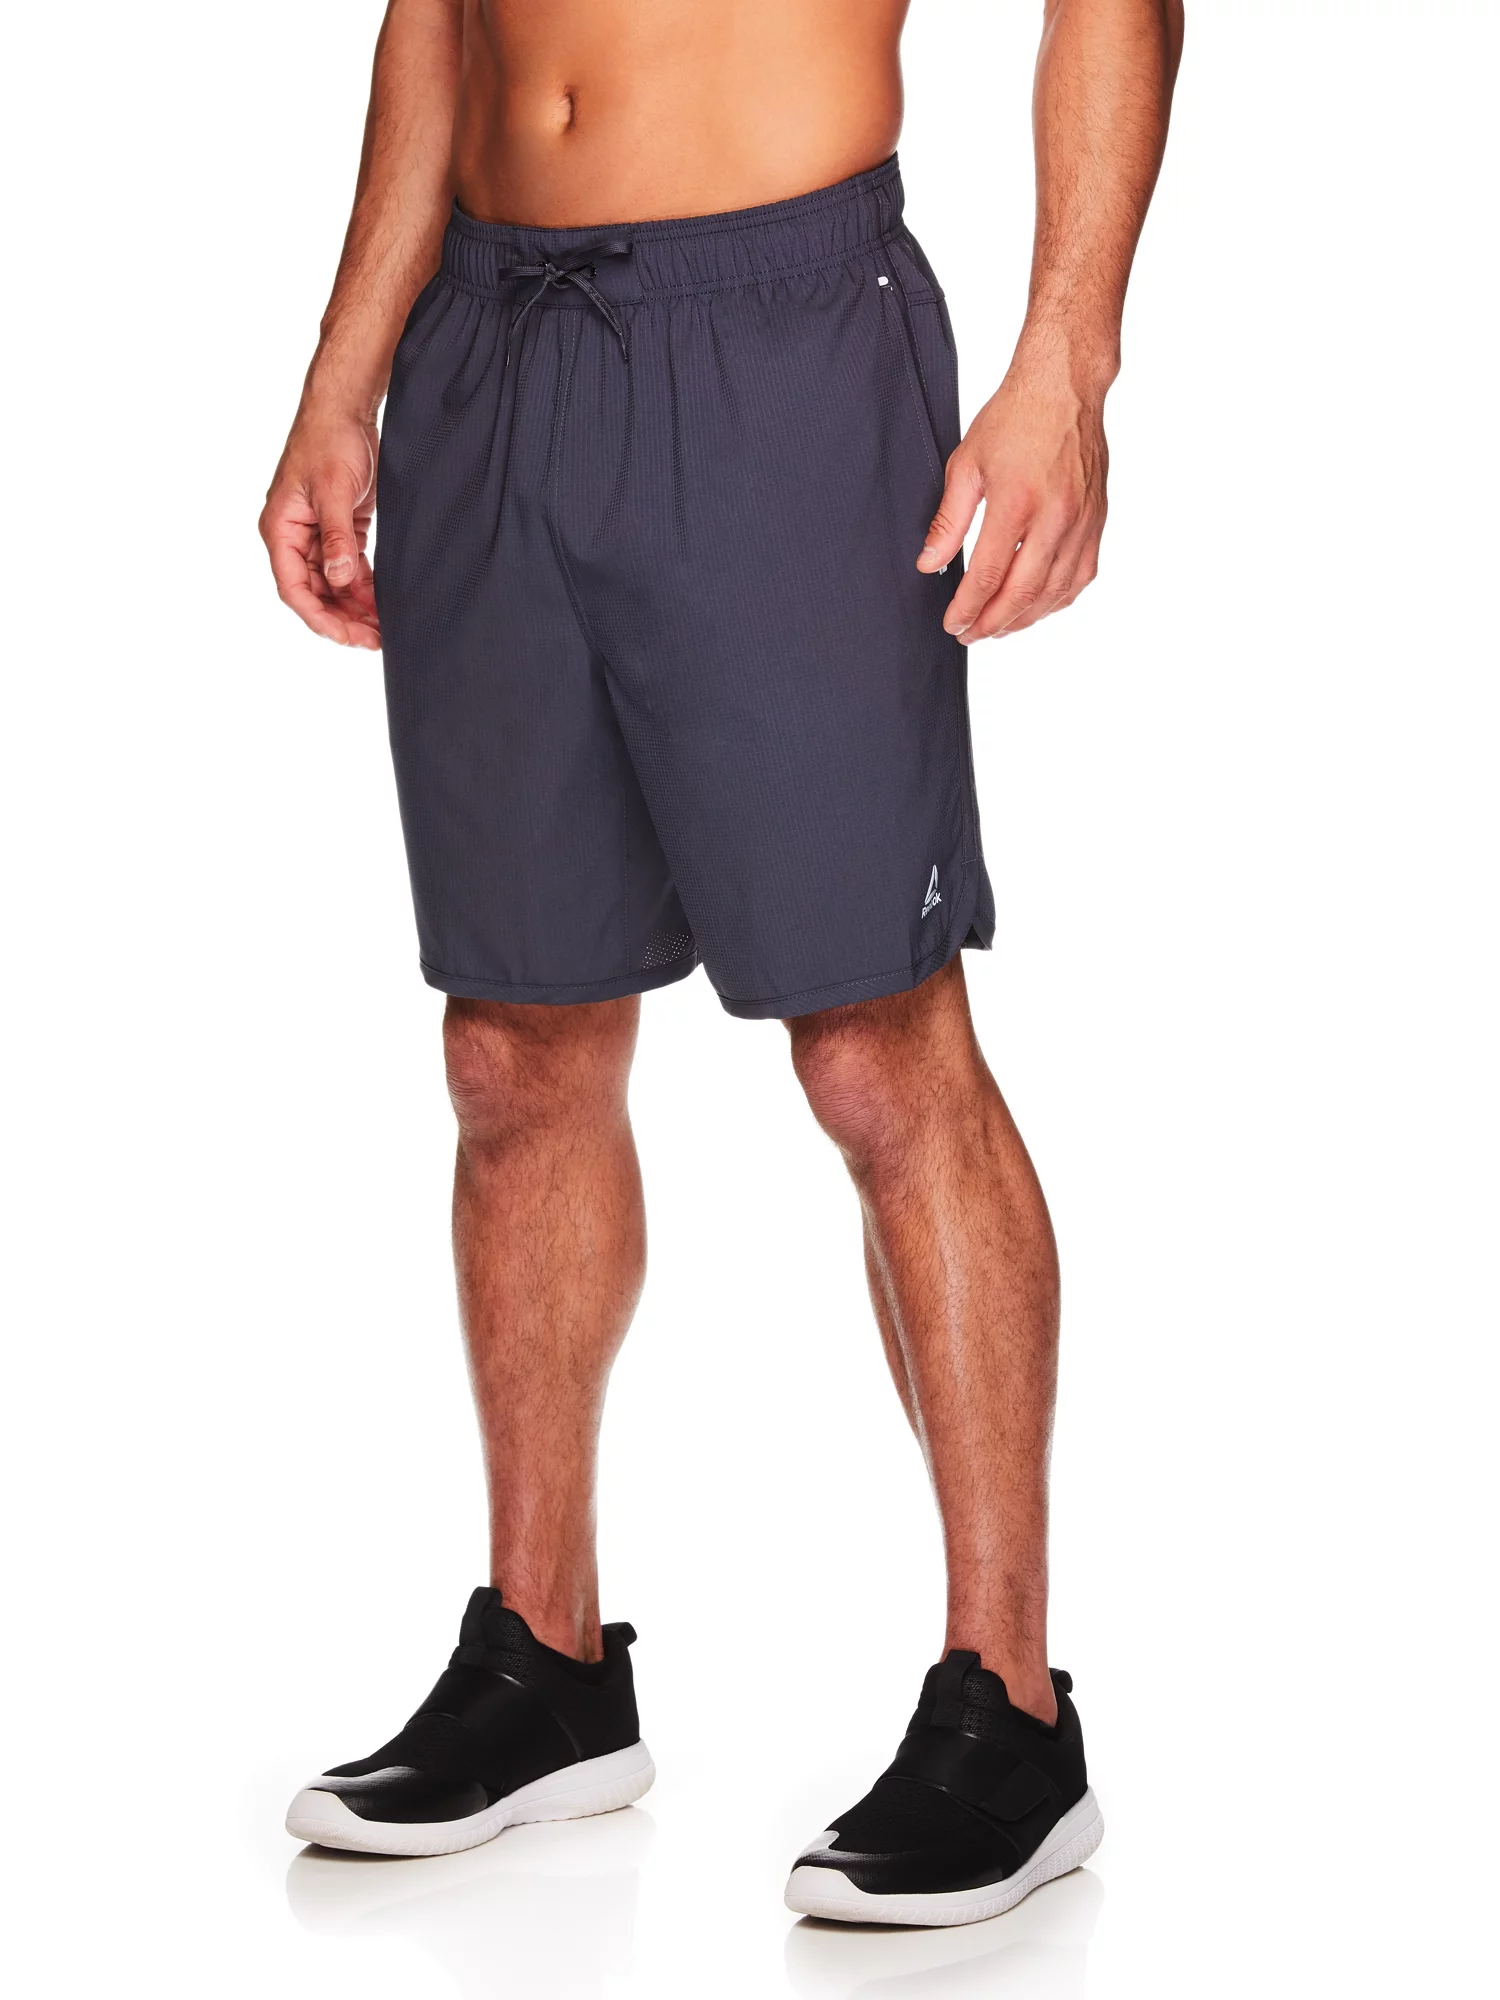 Reebok Men's Paceline Shorts